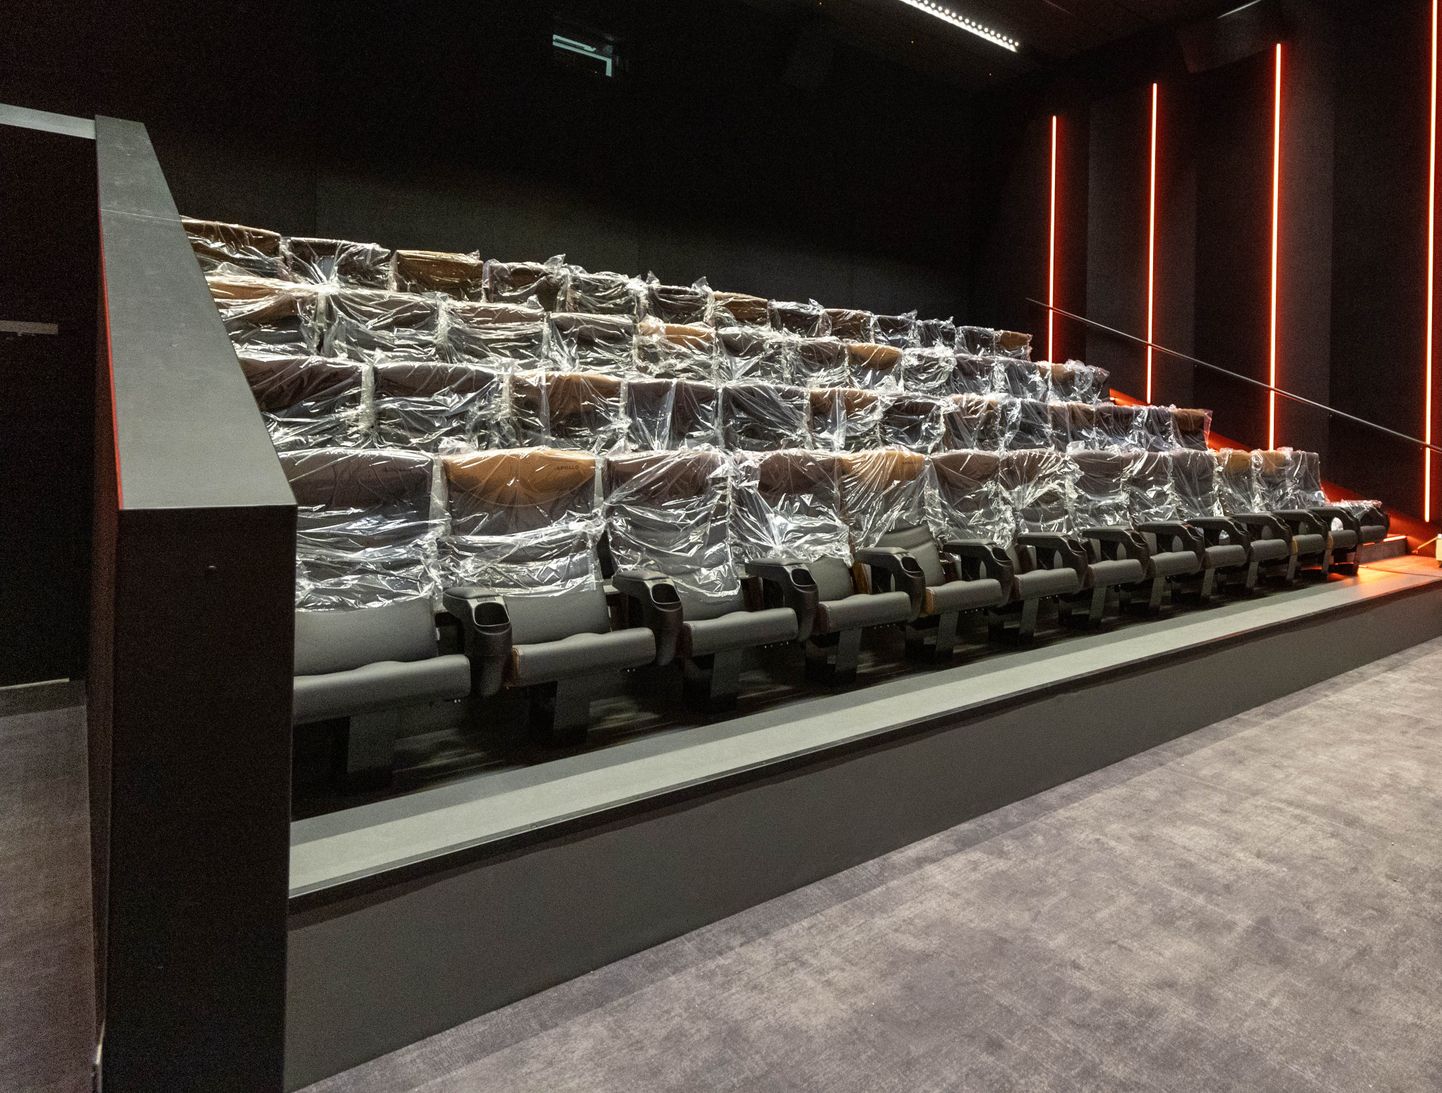 Neljapäeval käis uue kino sisustamine ja viimistlemine veel täie hooga. Fuajees sättisid mehed üles popcorni-masinaid, saalides olid toolid veel kile all.